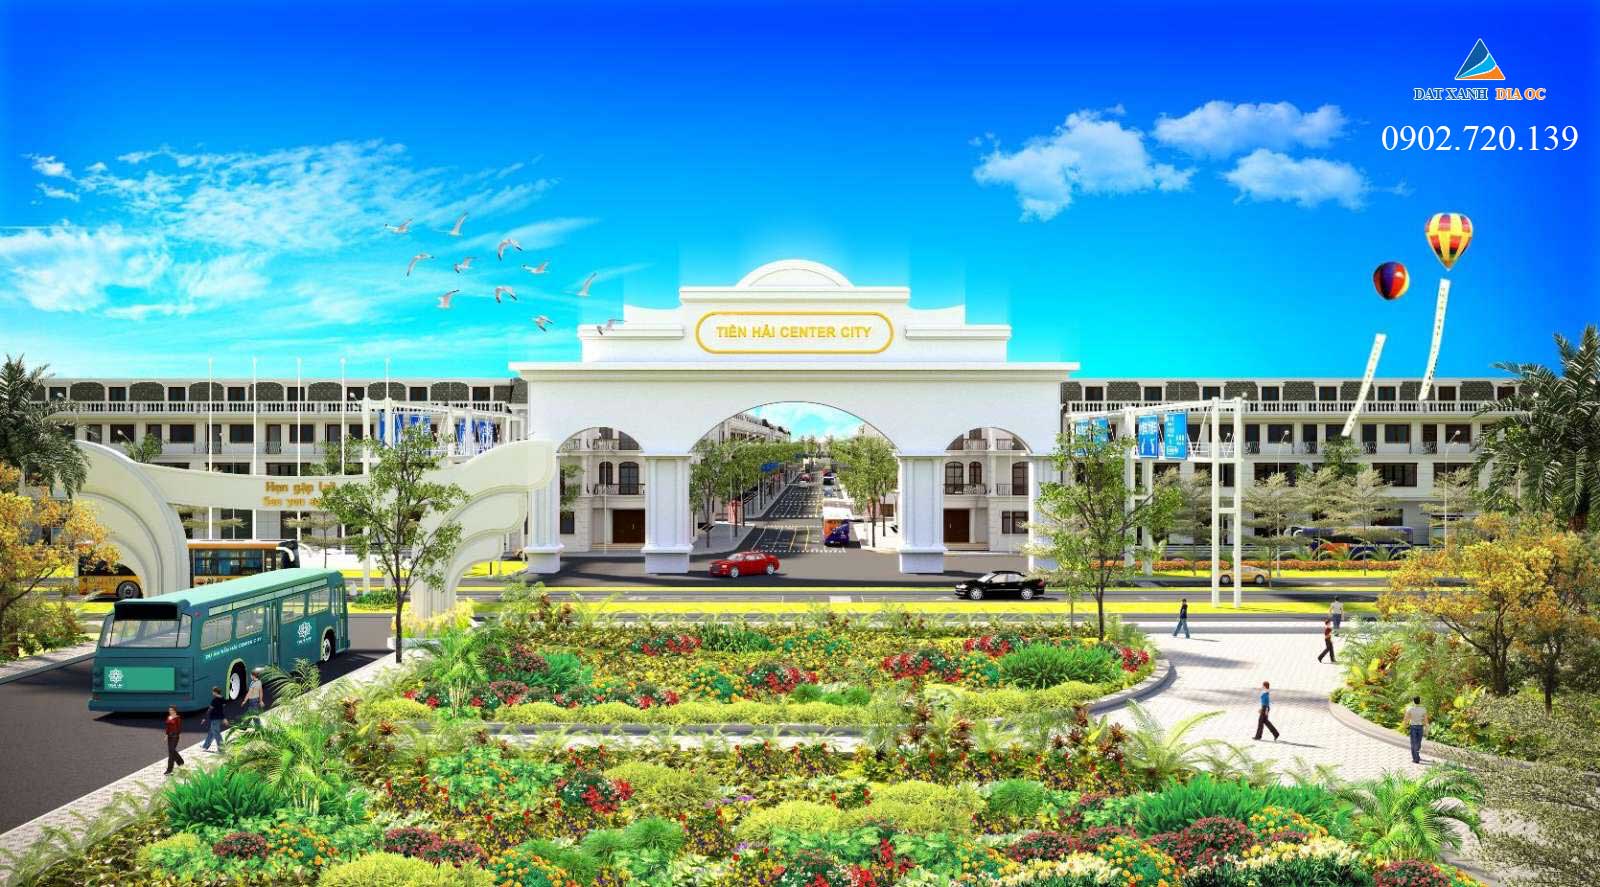 Phối cảnh dự án Tiền Hải Center City Thái Bình - Hình 02